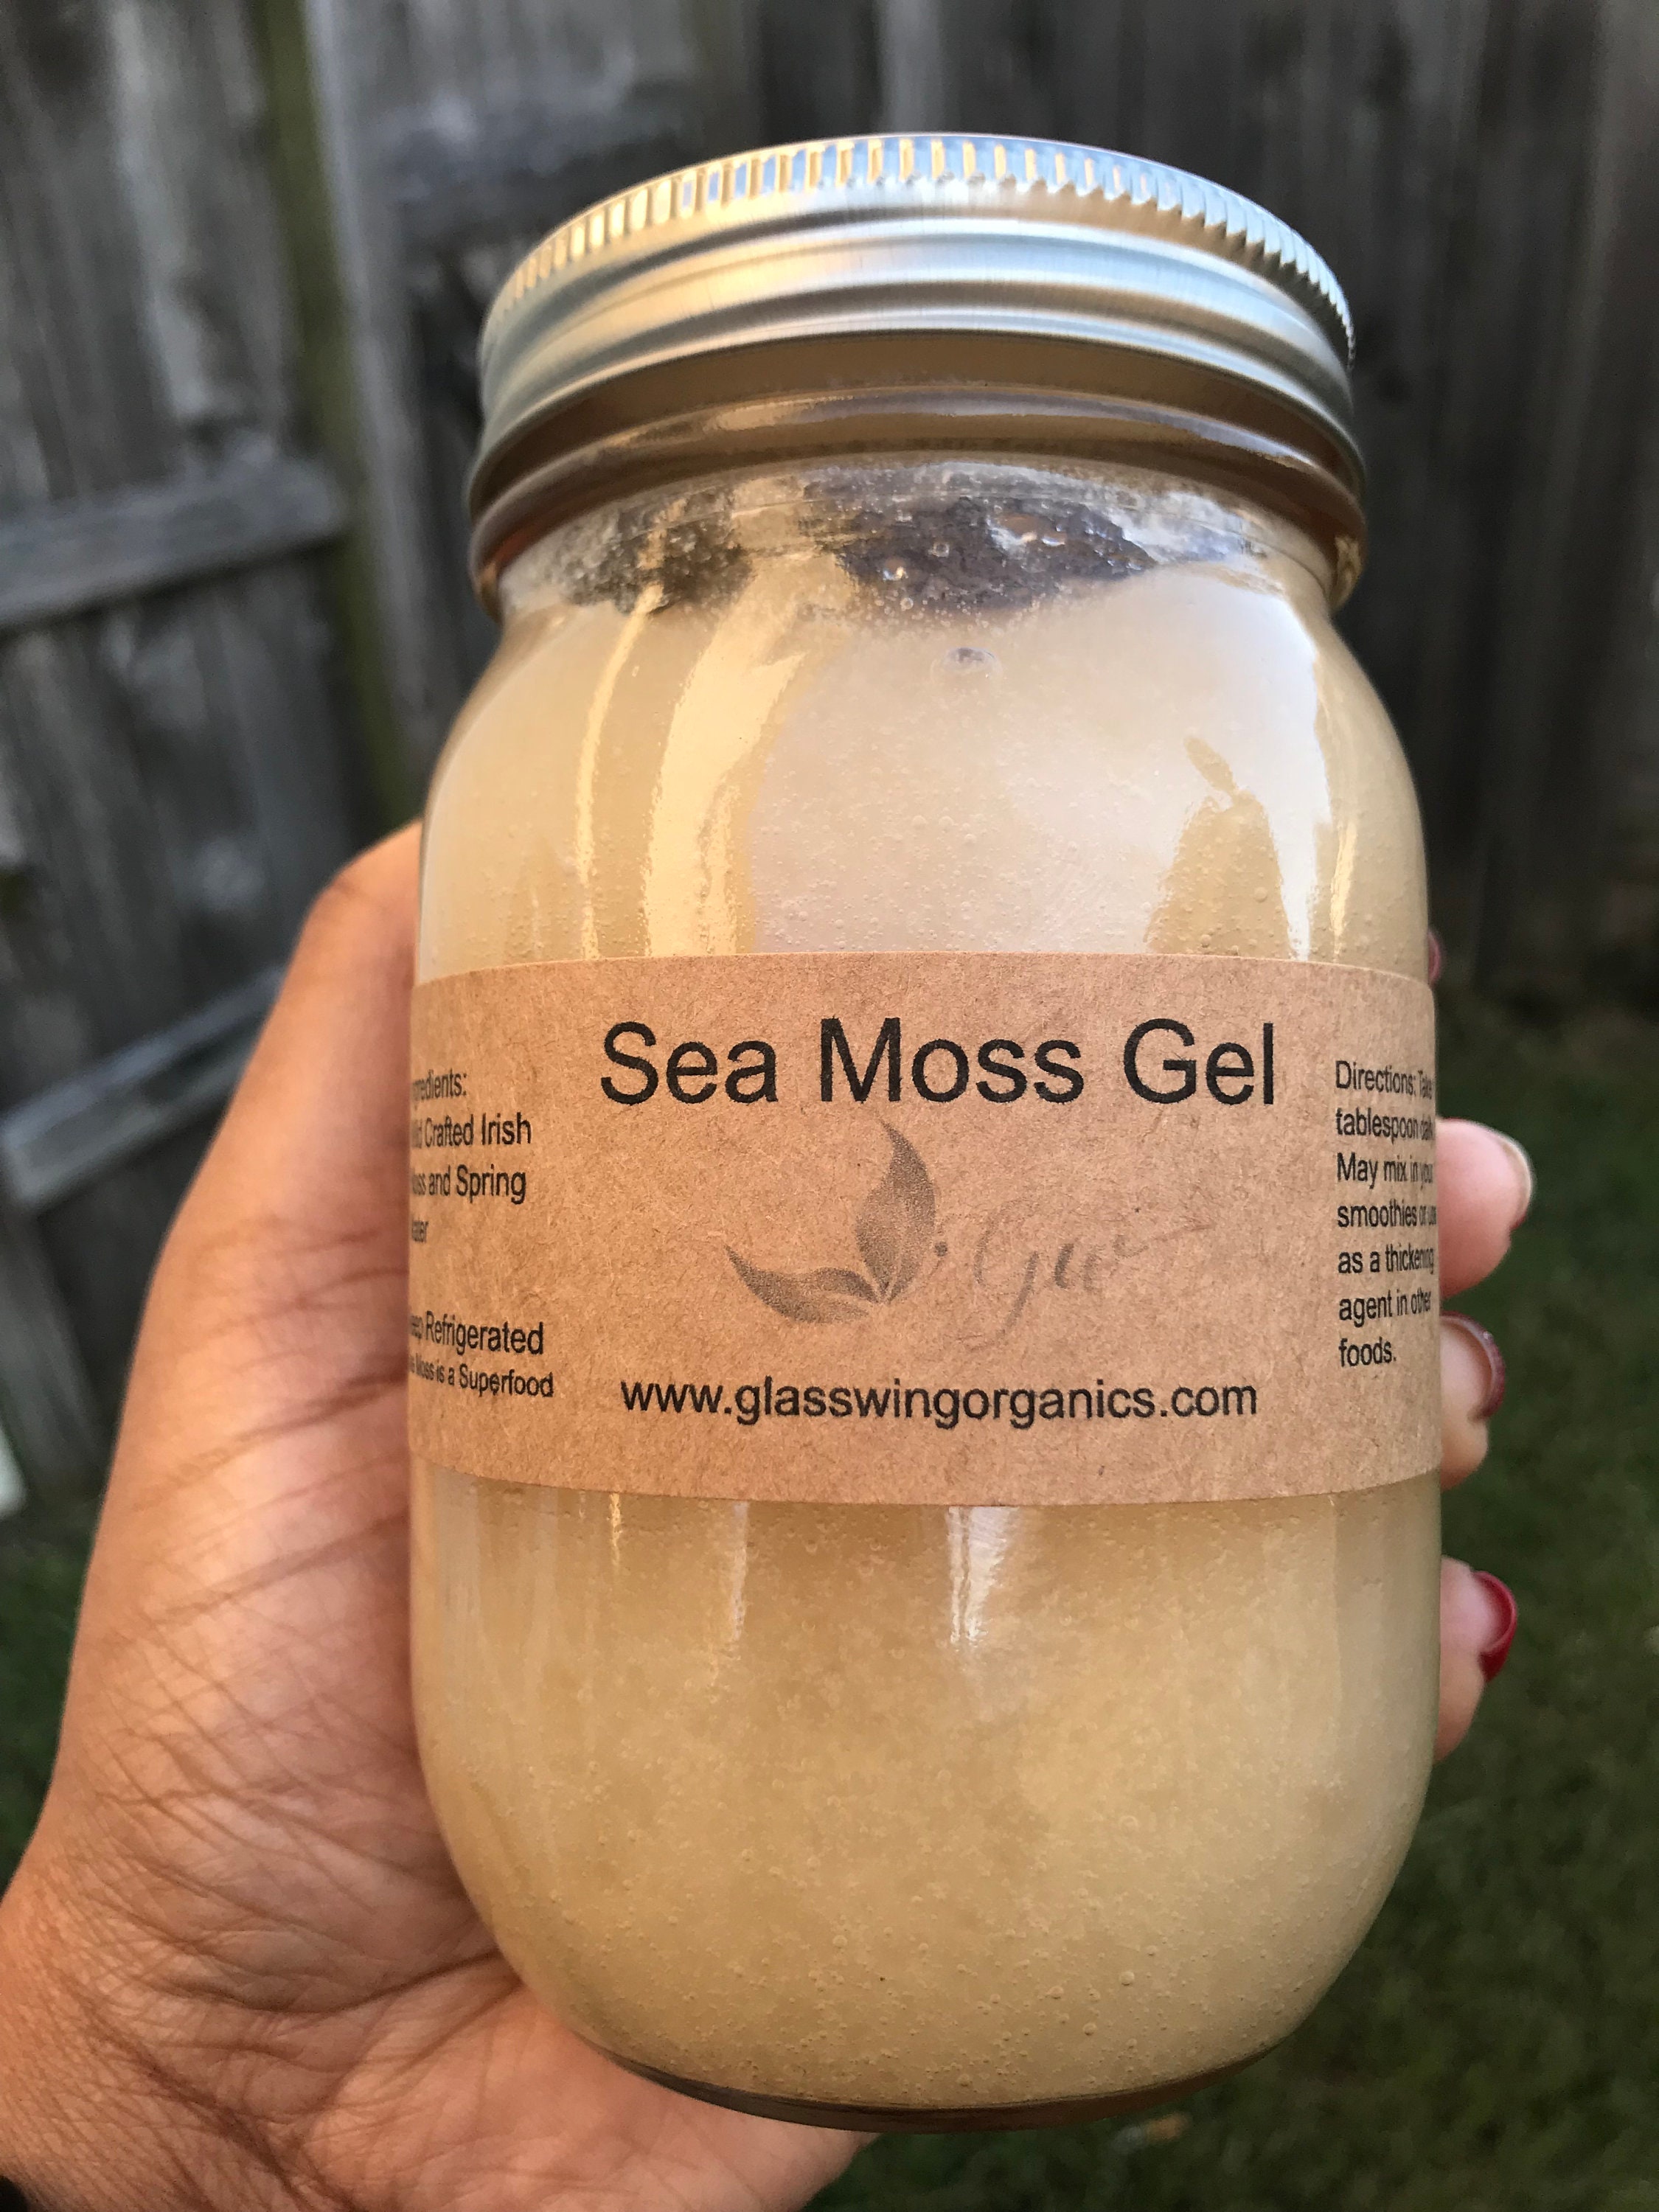 Sea gel. Sea Moss Gel. Гель mos. Julia Moss гель. Sea Moss eating benefits.